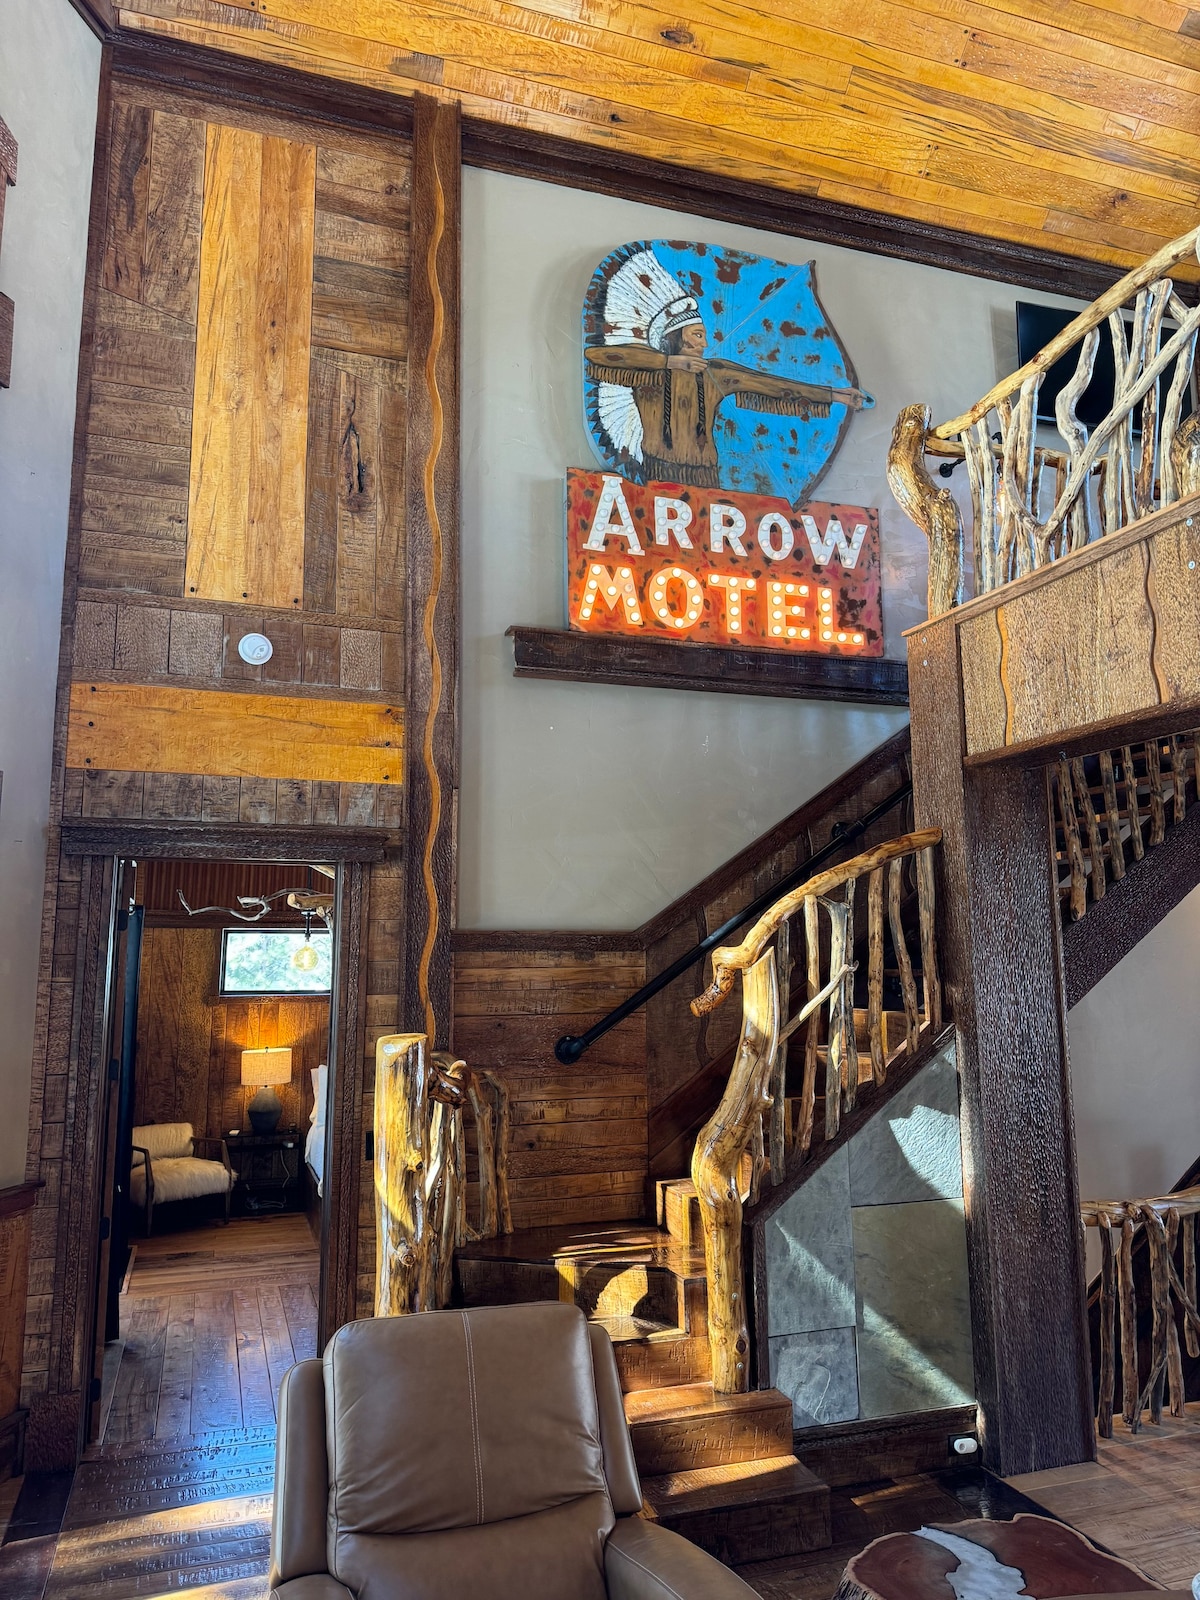 “Arrow Motel” Home on the Fairway